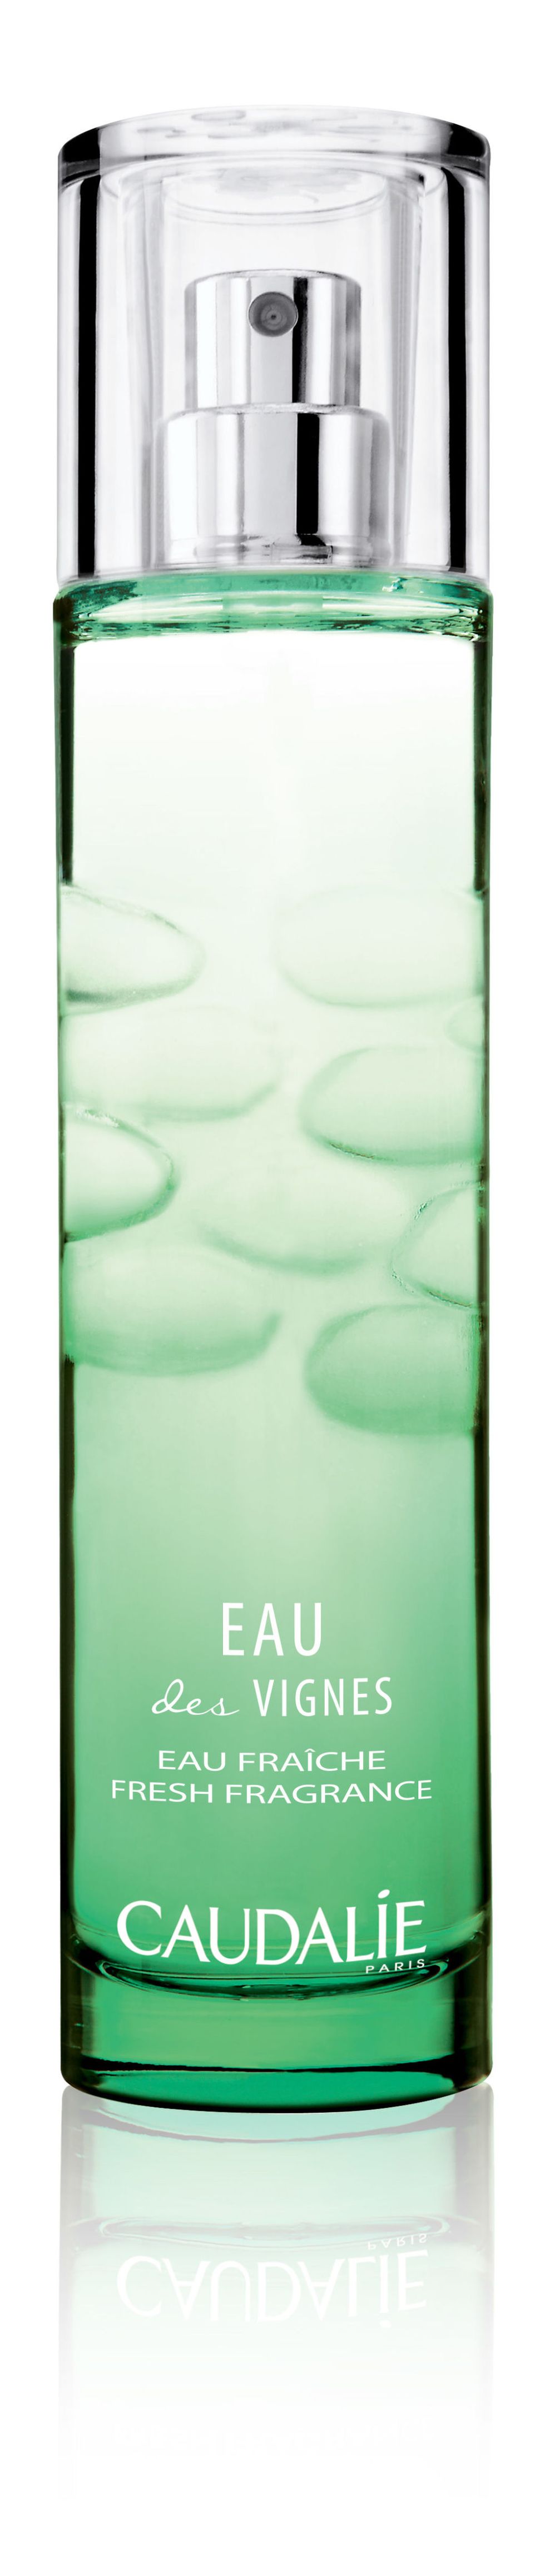 Green, Water, Bottle, Glass, 